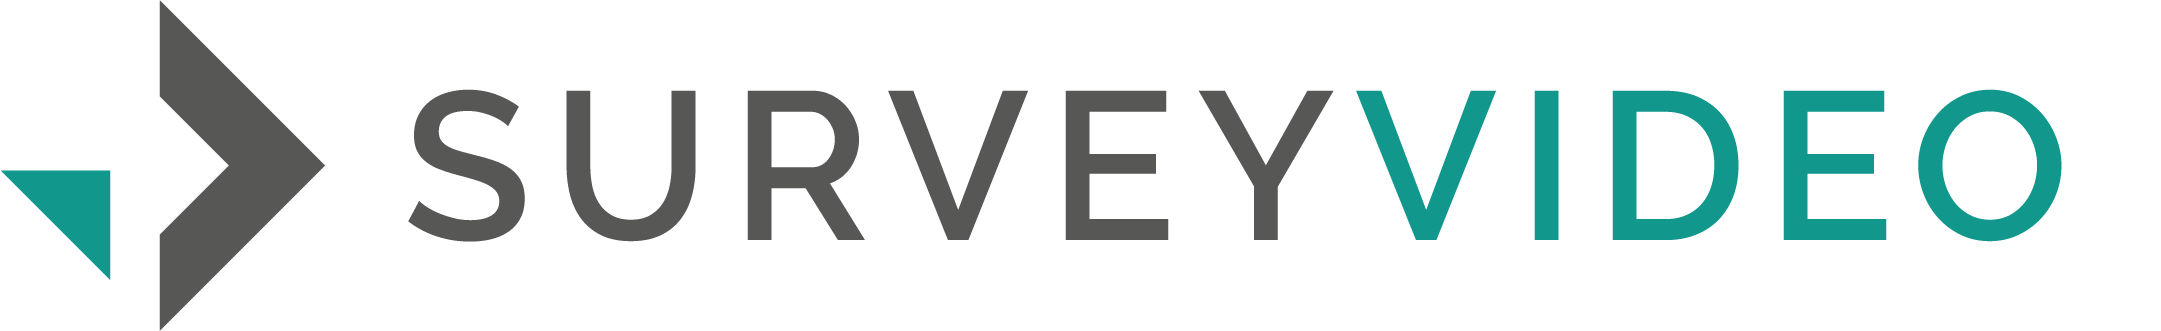 SurveyVideo logo